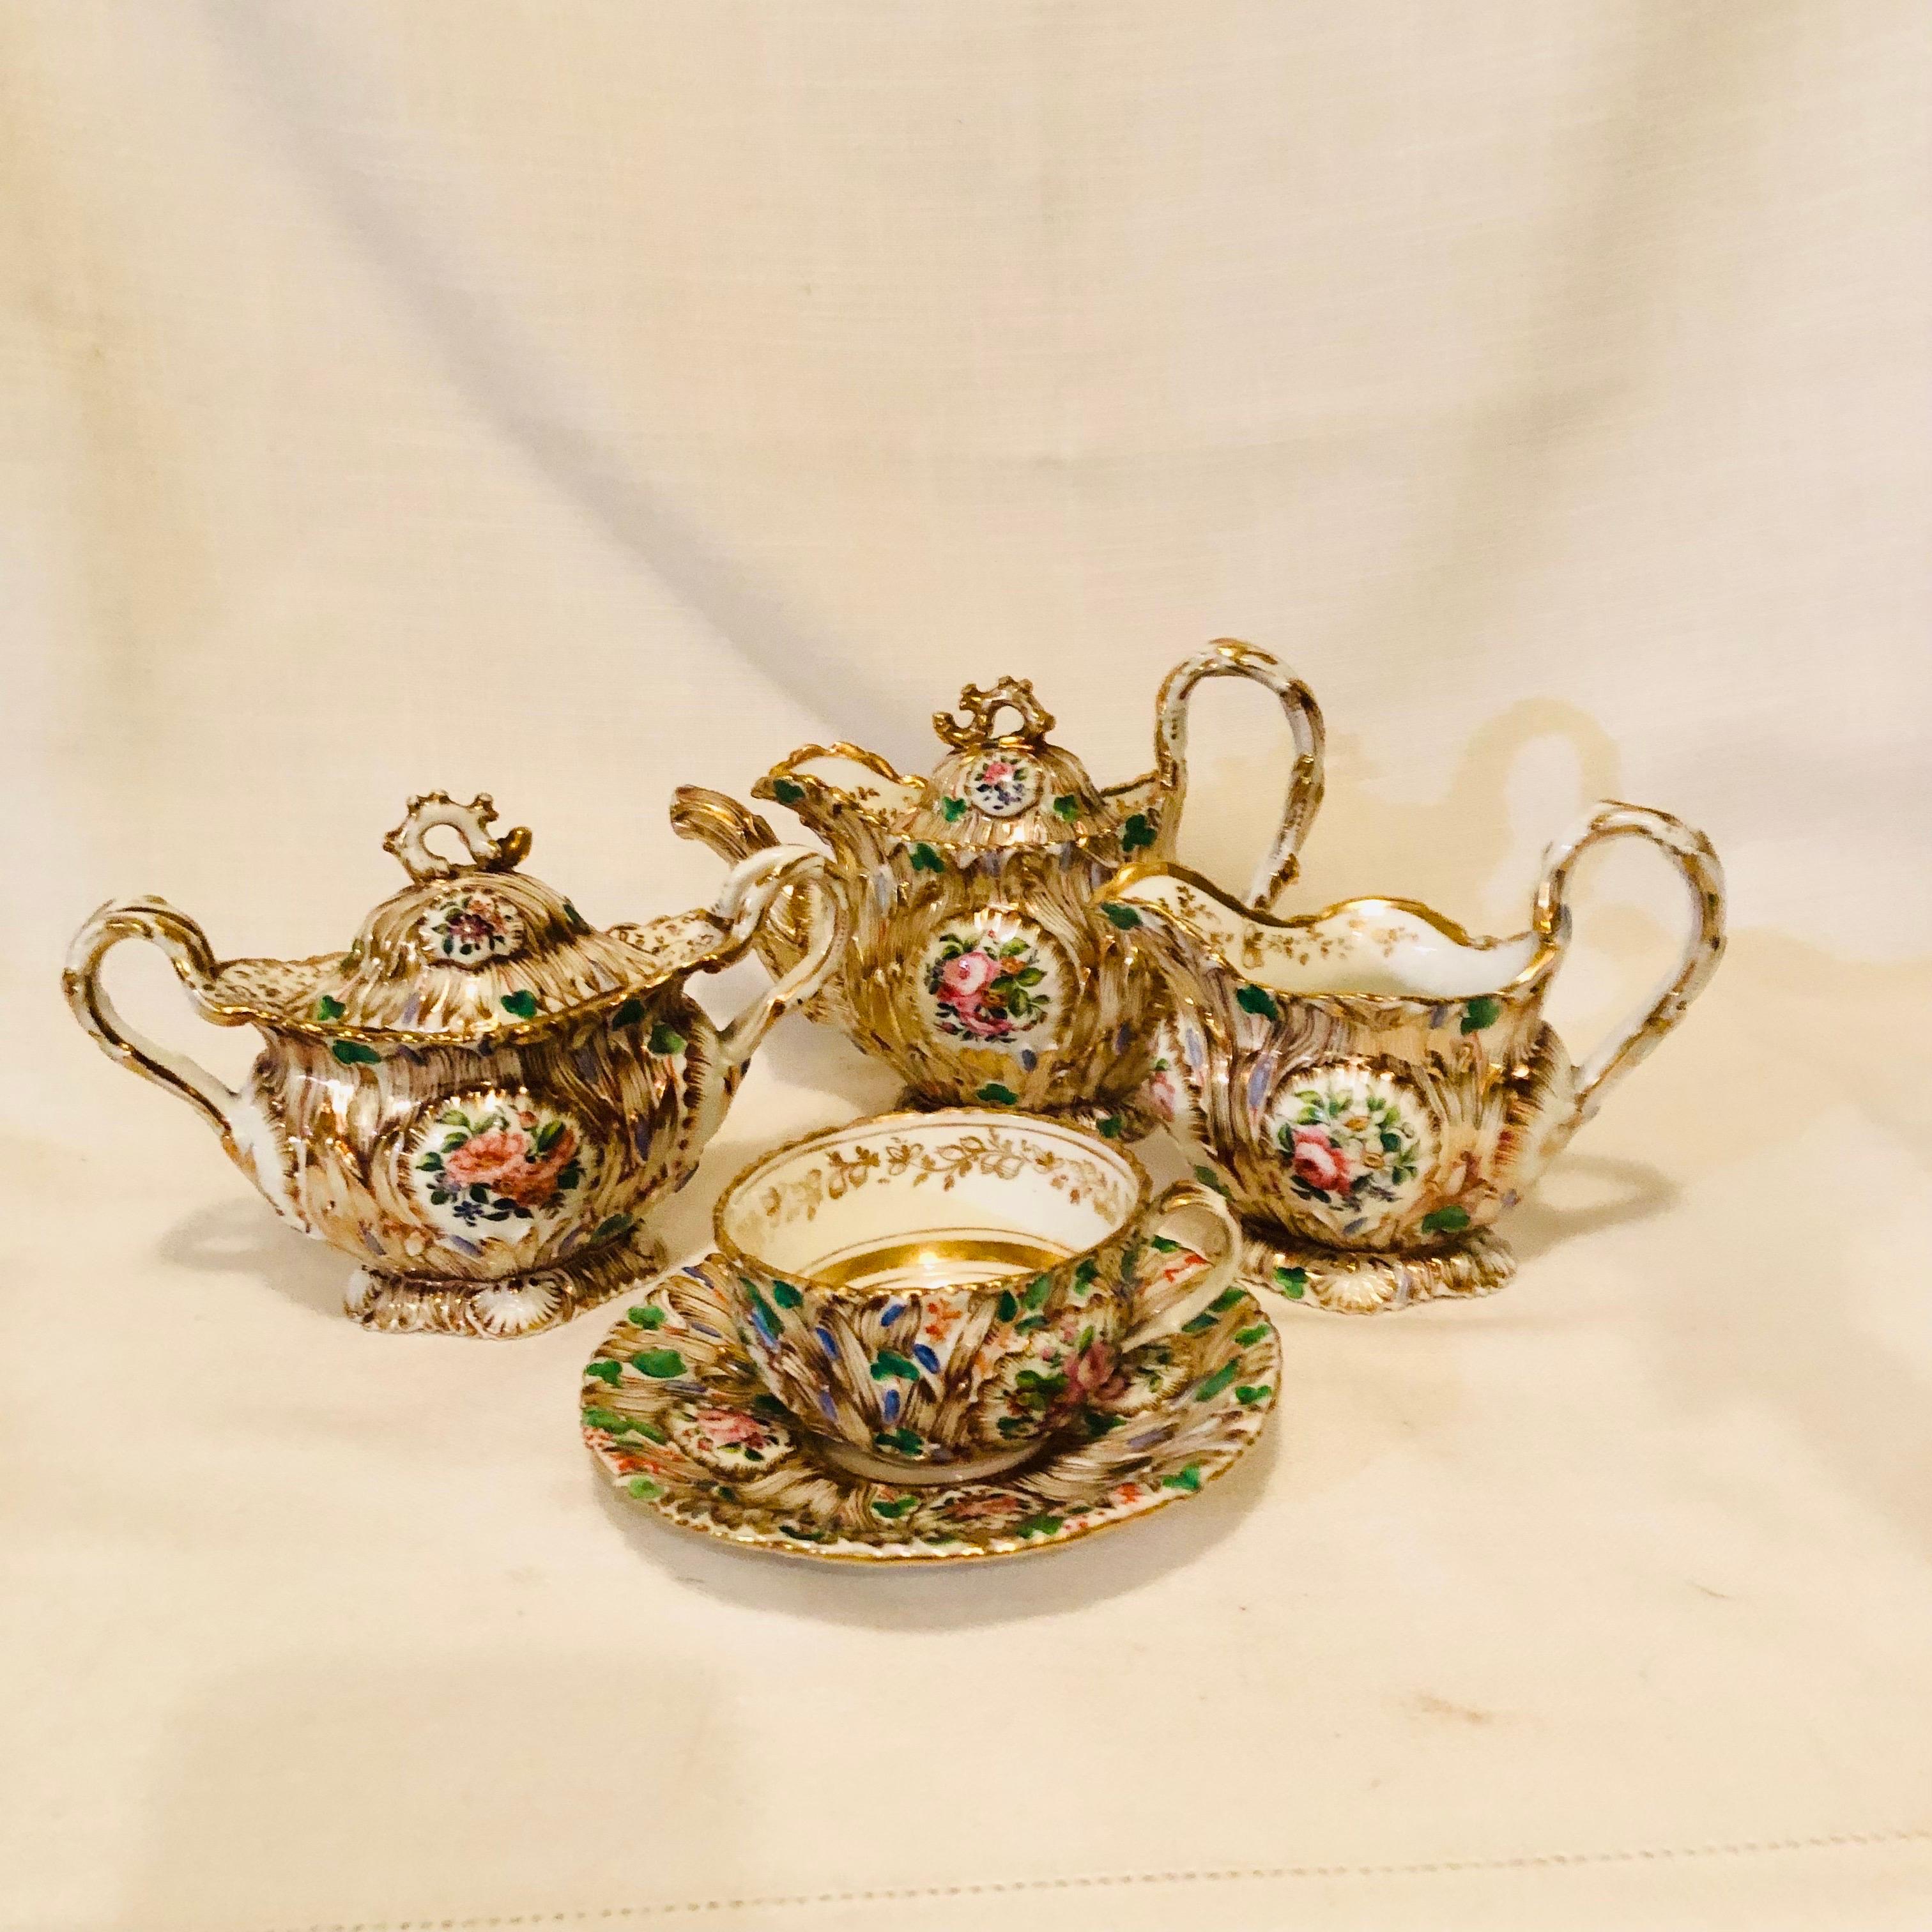 Jacob Petit Paris Porcelain Tea Set with Gilt and Colorful Rococo Decoration For Sale 6